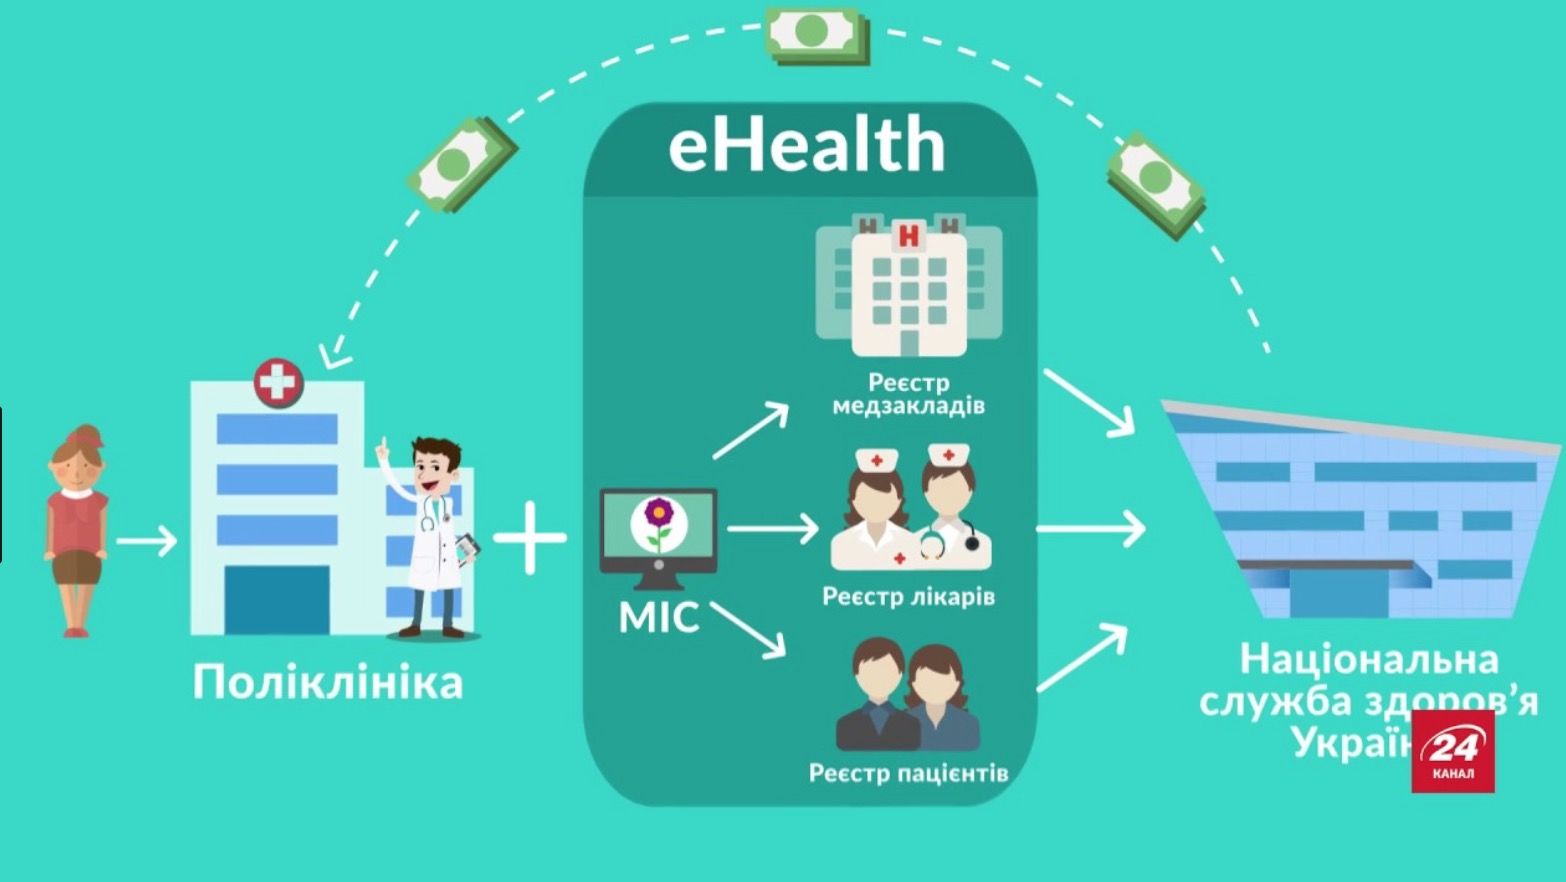 Электронная система здравоохранения eHealth начнет работать в Украине в 2019 году